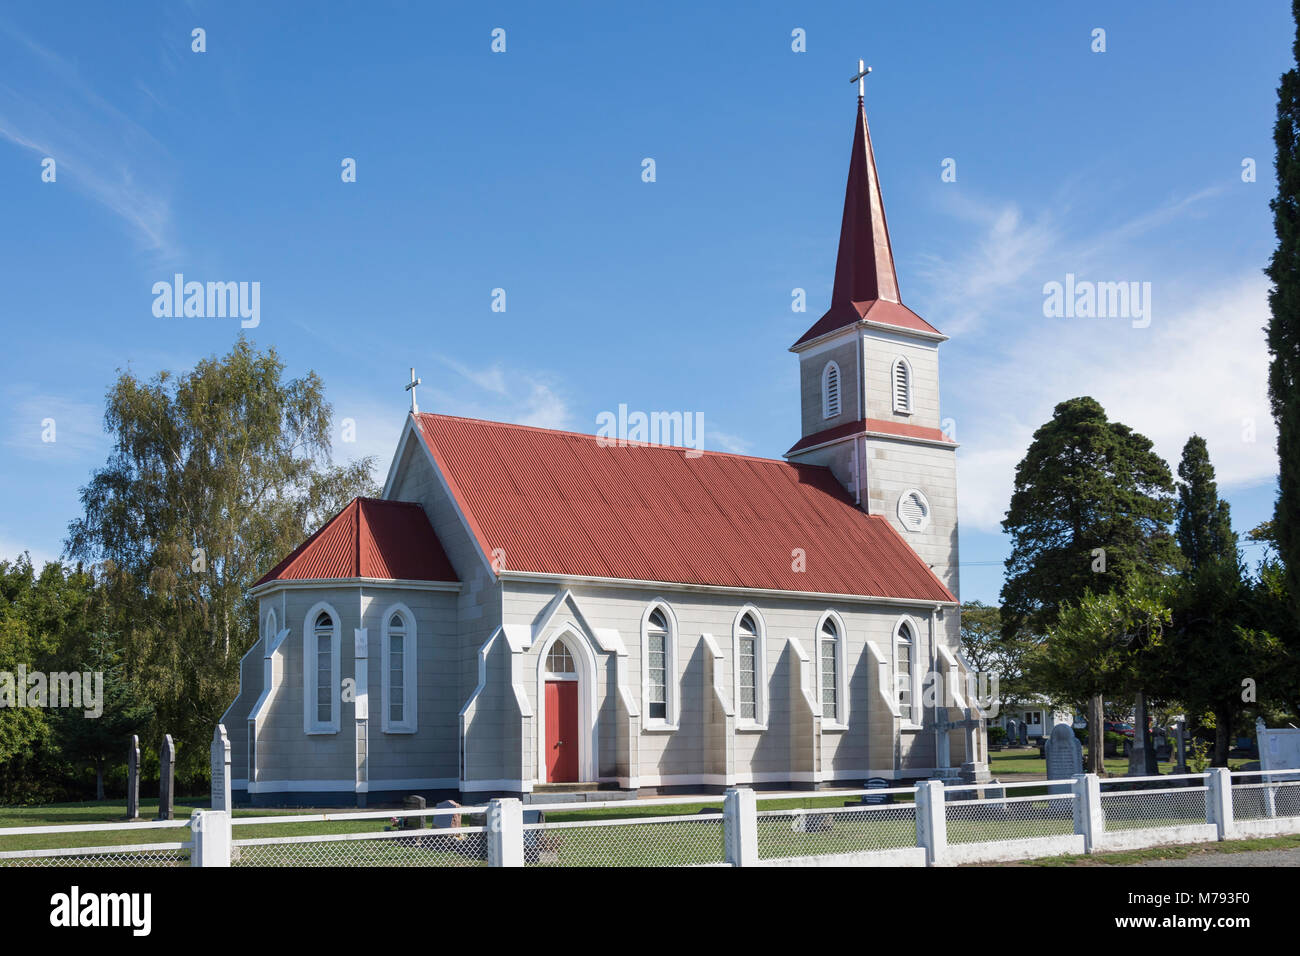 Histórico de la Iglesia Luterana de San Pablo, Supplejack Valley Road, Upper Moutere, distrito de Tasmania, Nueva Zelanda Foto de stock